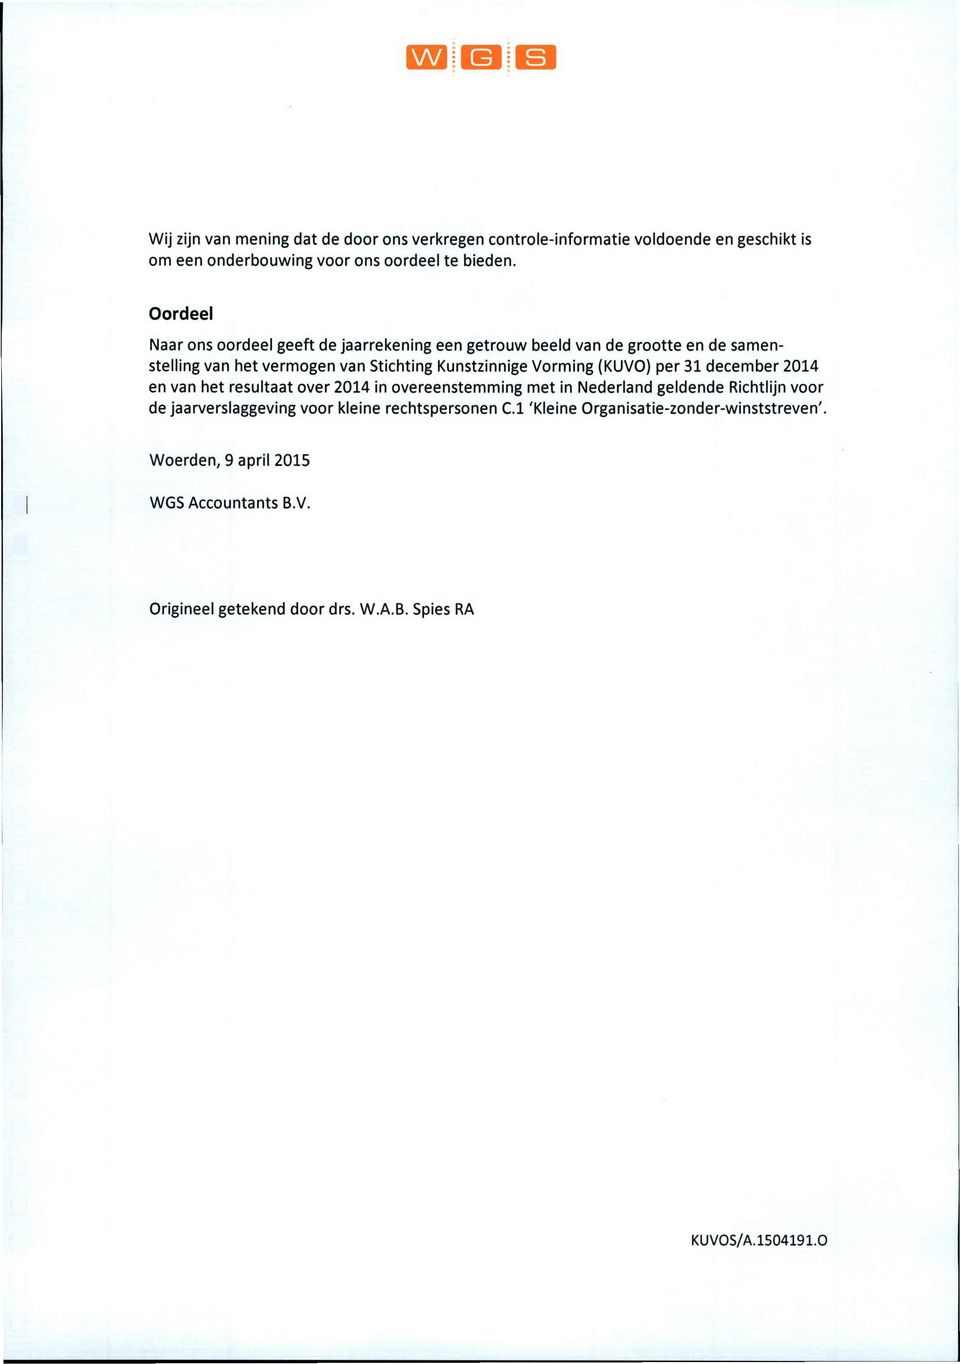 Vorming (KUVO) per 31 december 2014 en van het resultaat over 2014 in overeenstemming met in Nederland geldende Richtlijn voor de jaarverslaggeving